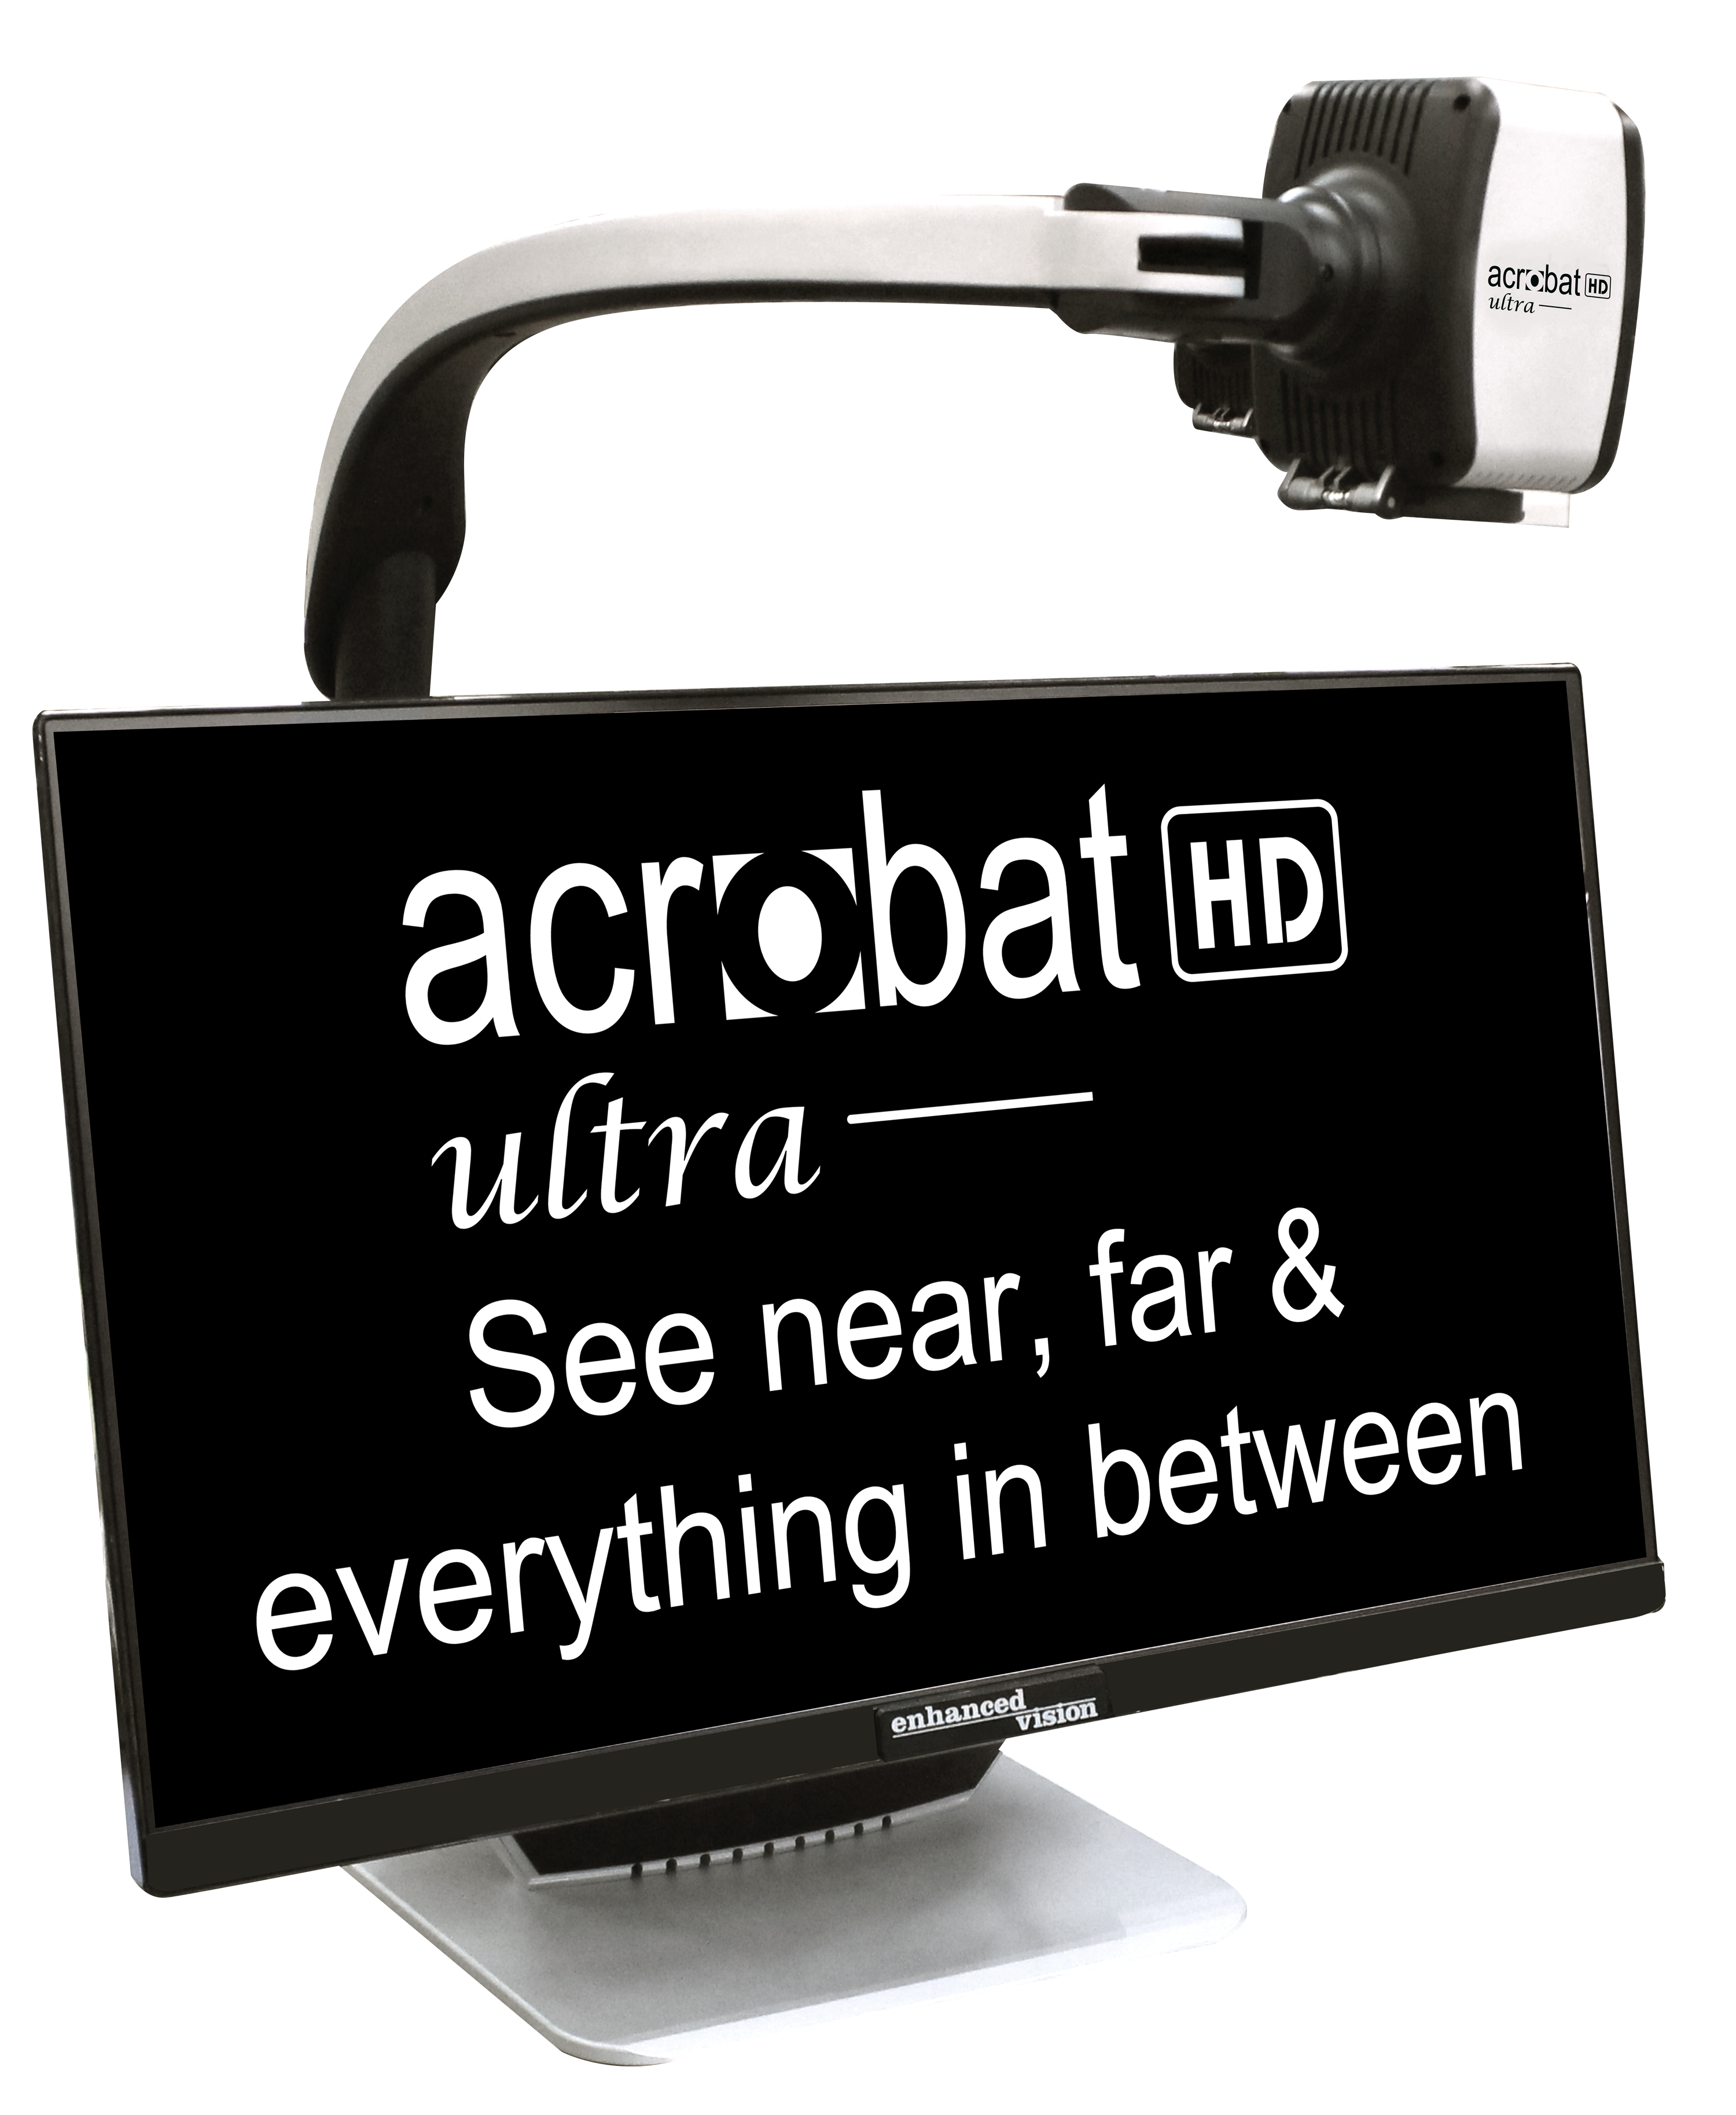 acrobat HD機器の画像です。